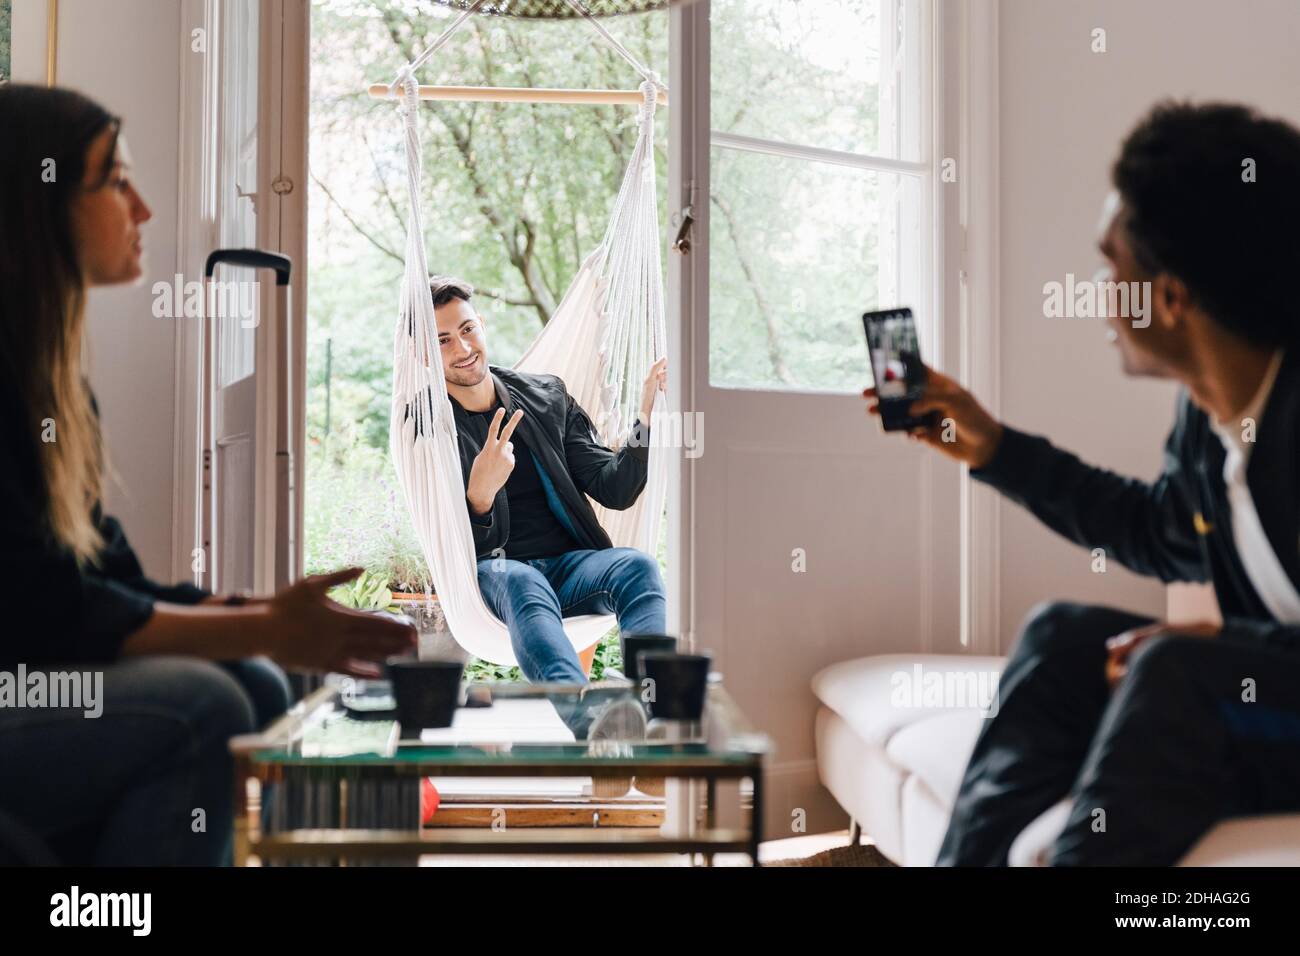 Mann fotografiert Freund mit Smartphone, während er im Schaukel sitzt Zu Hause Stockfoto